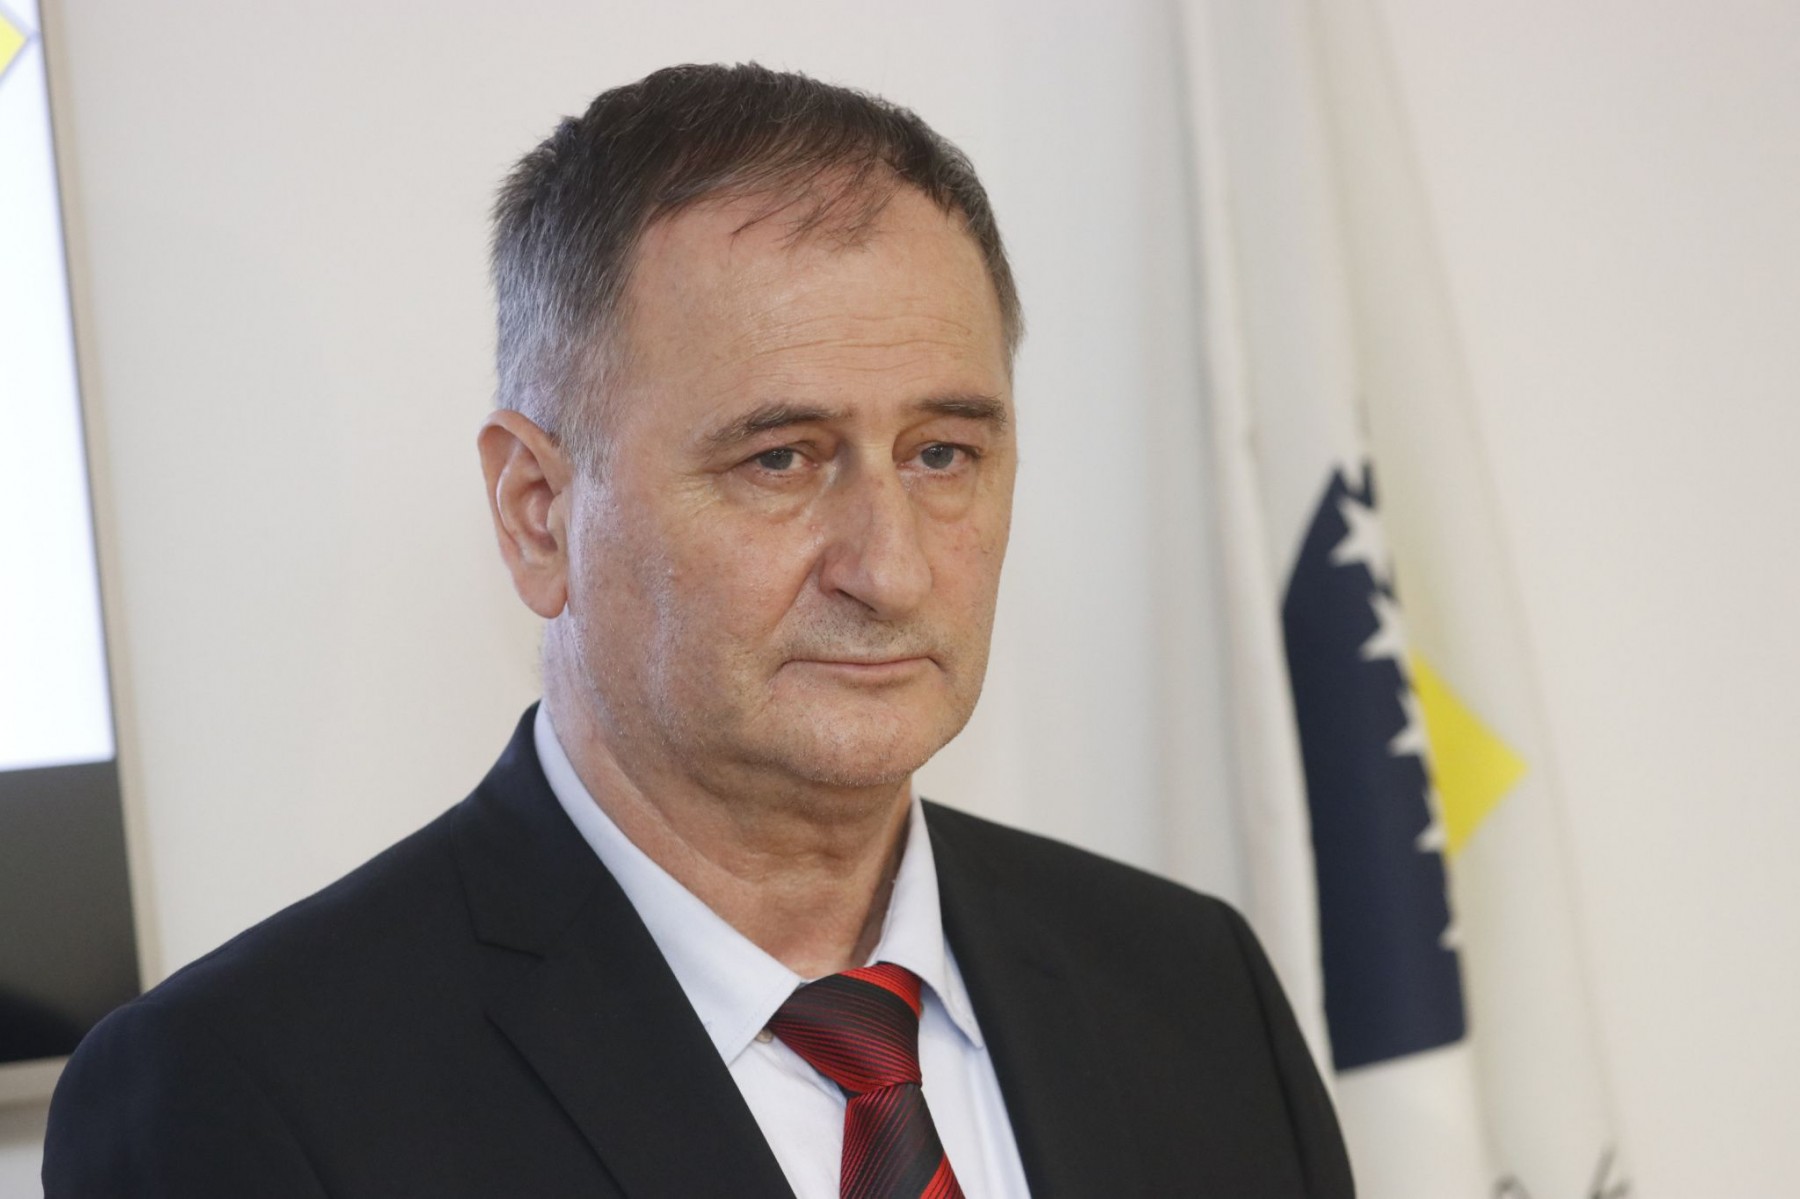 Visoko sudsko i tužilačko vijeće se protivi smanjenju nadležnosti Suda Bosne i Hercegovine, rekao je Halil Lagumdžija, predsjednik VSTV-a